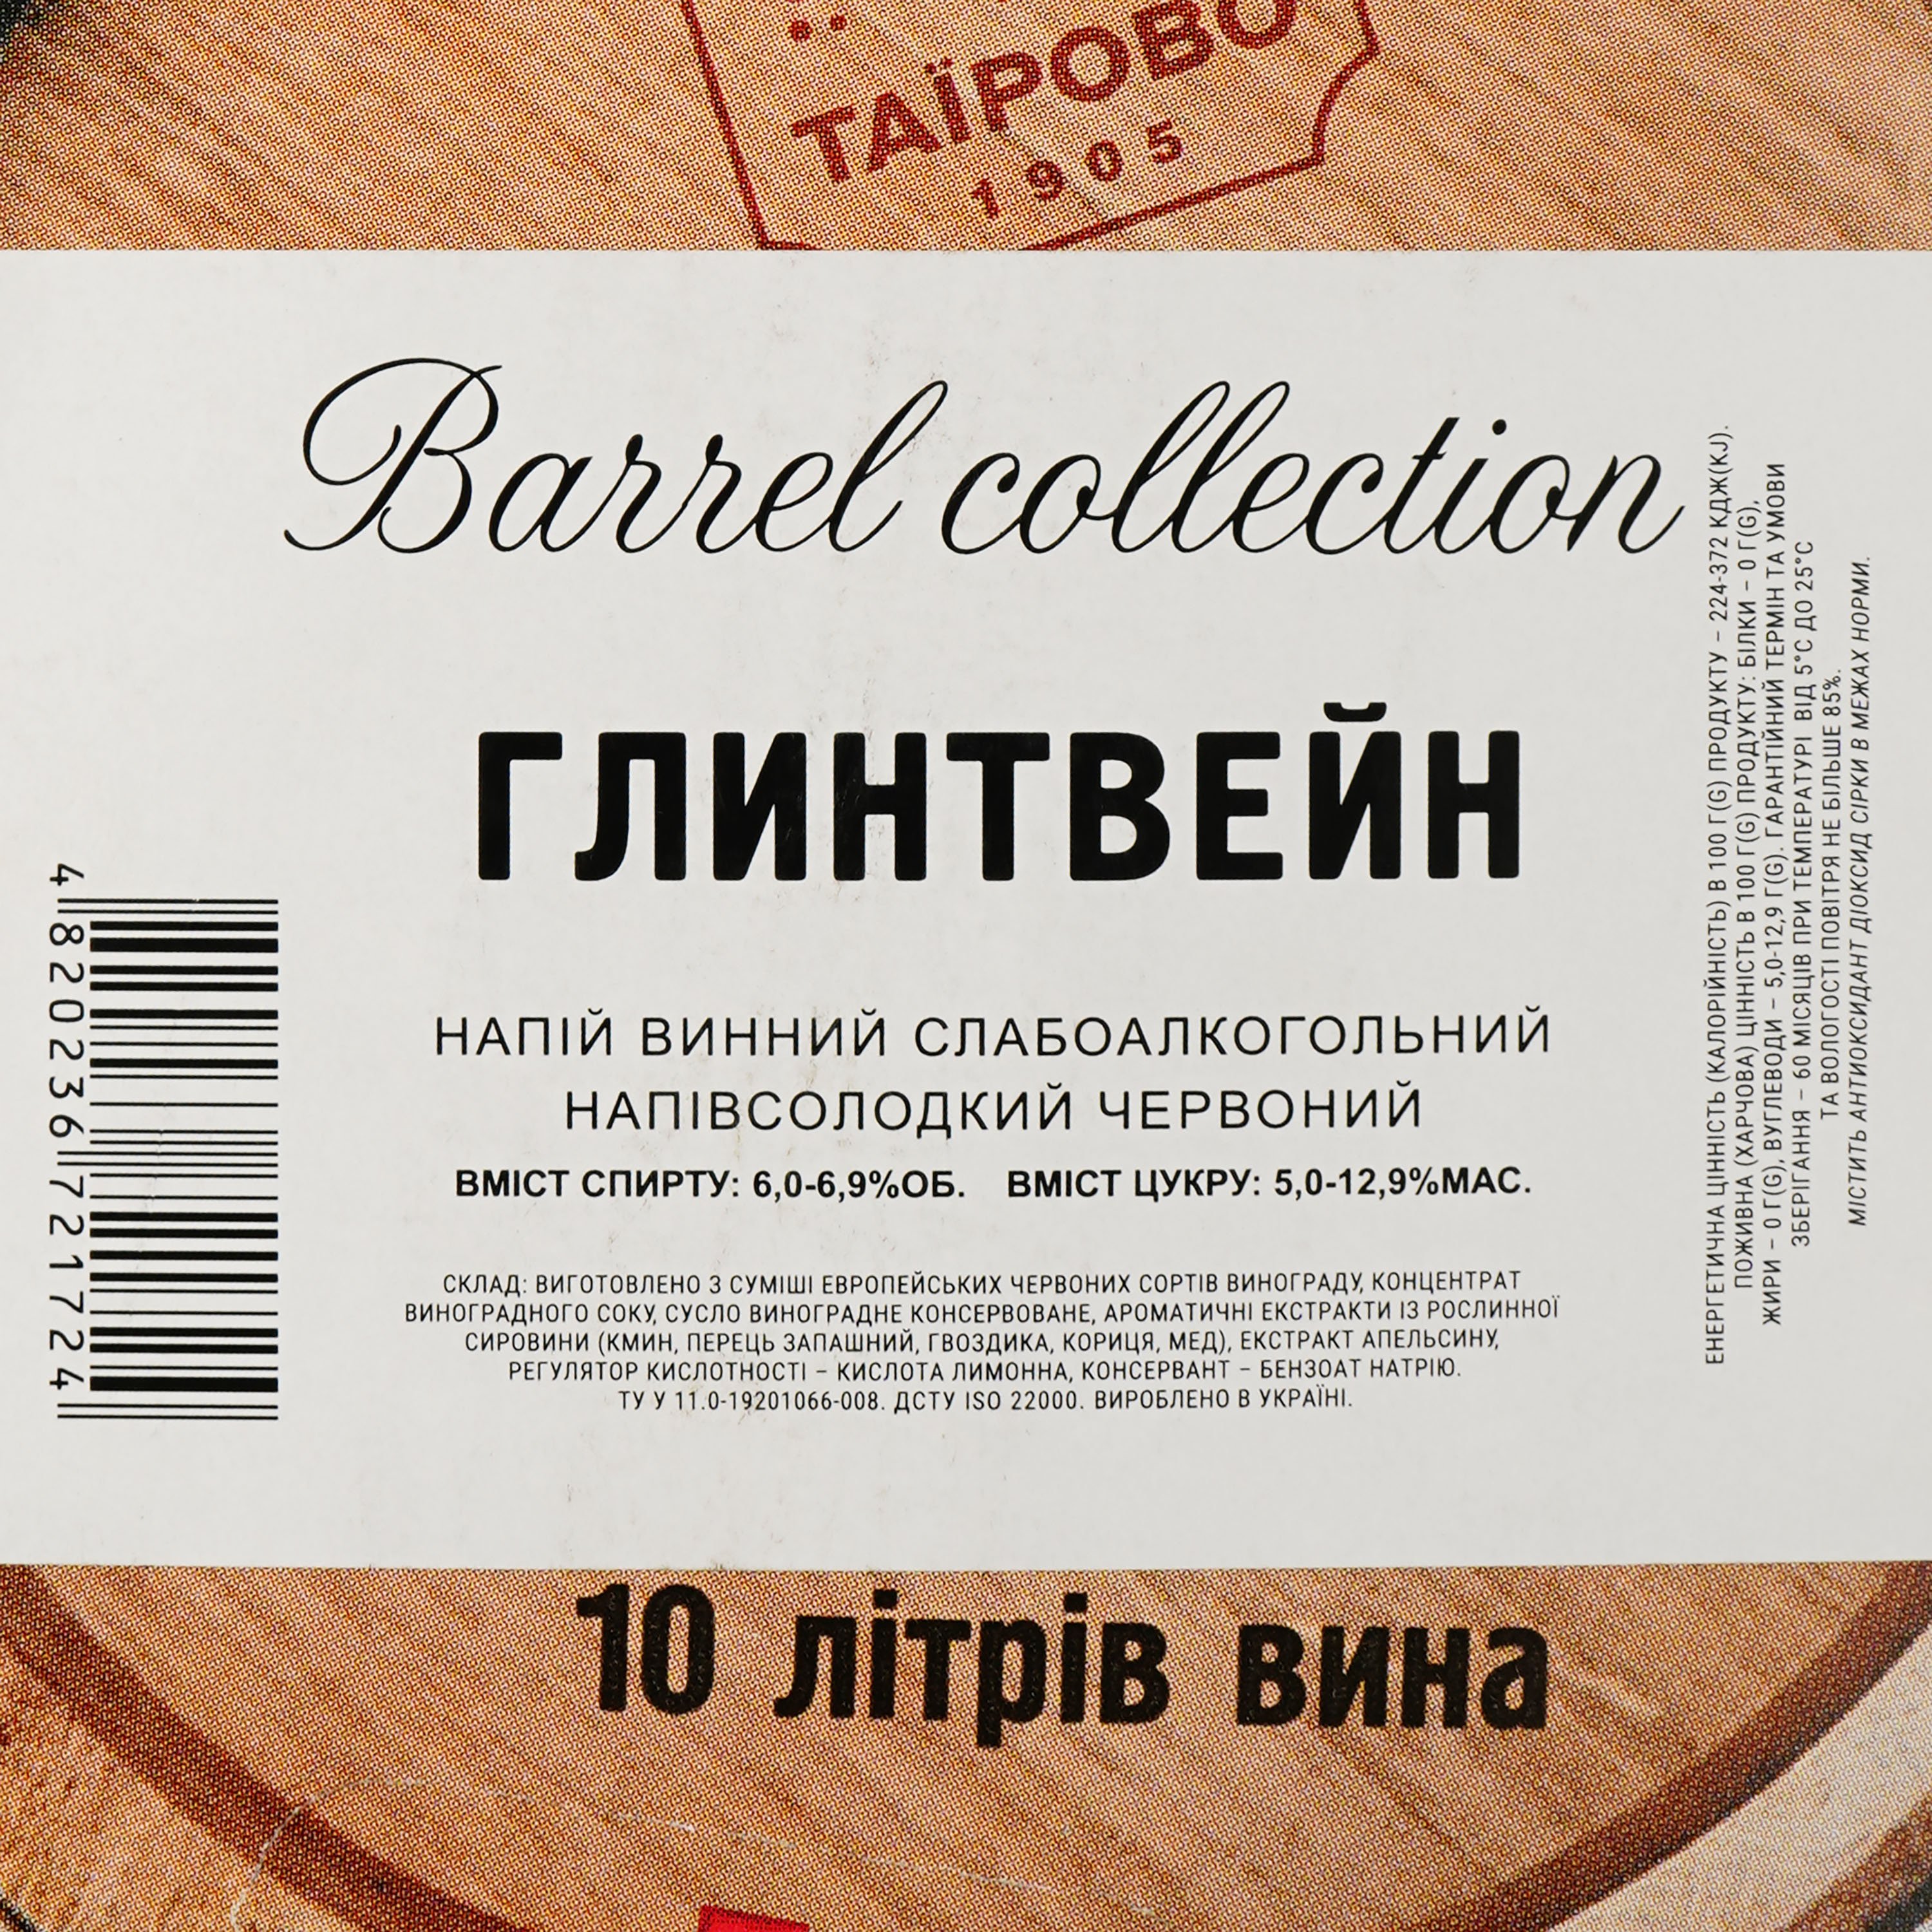 Винный напиток Таирово Глитвейн красный полусладкий bag-in-box 10 л - фото 3